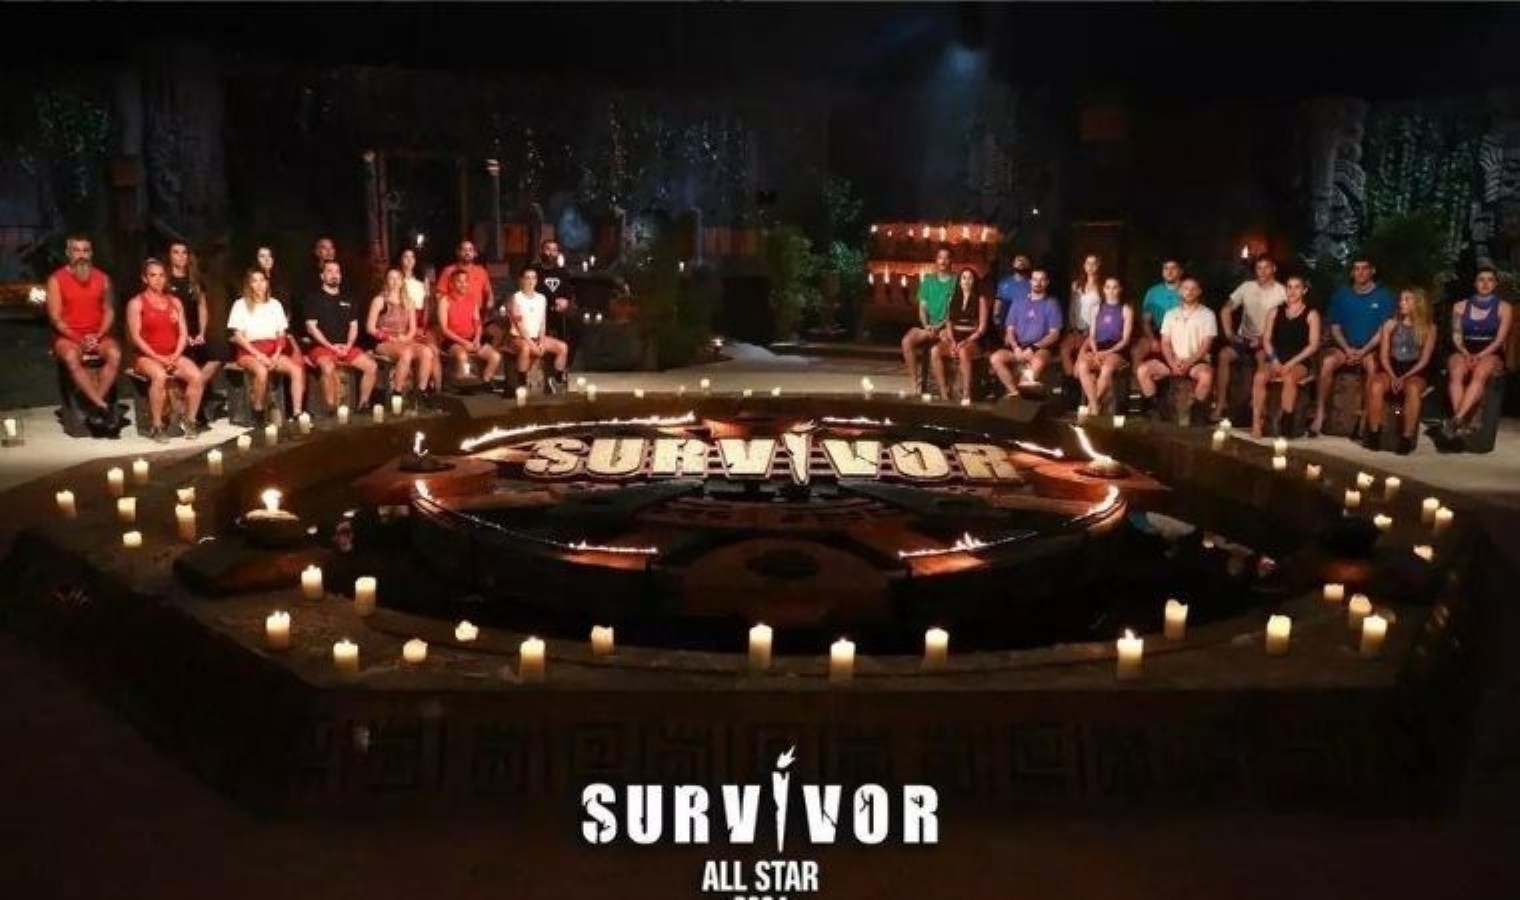 Survivor’da eleme adayı kim? Survivor All Star’da ilk oyunu kim kazandı? Eleme potasına giren isim…